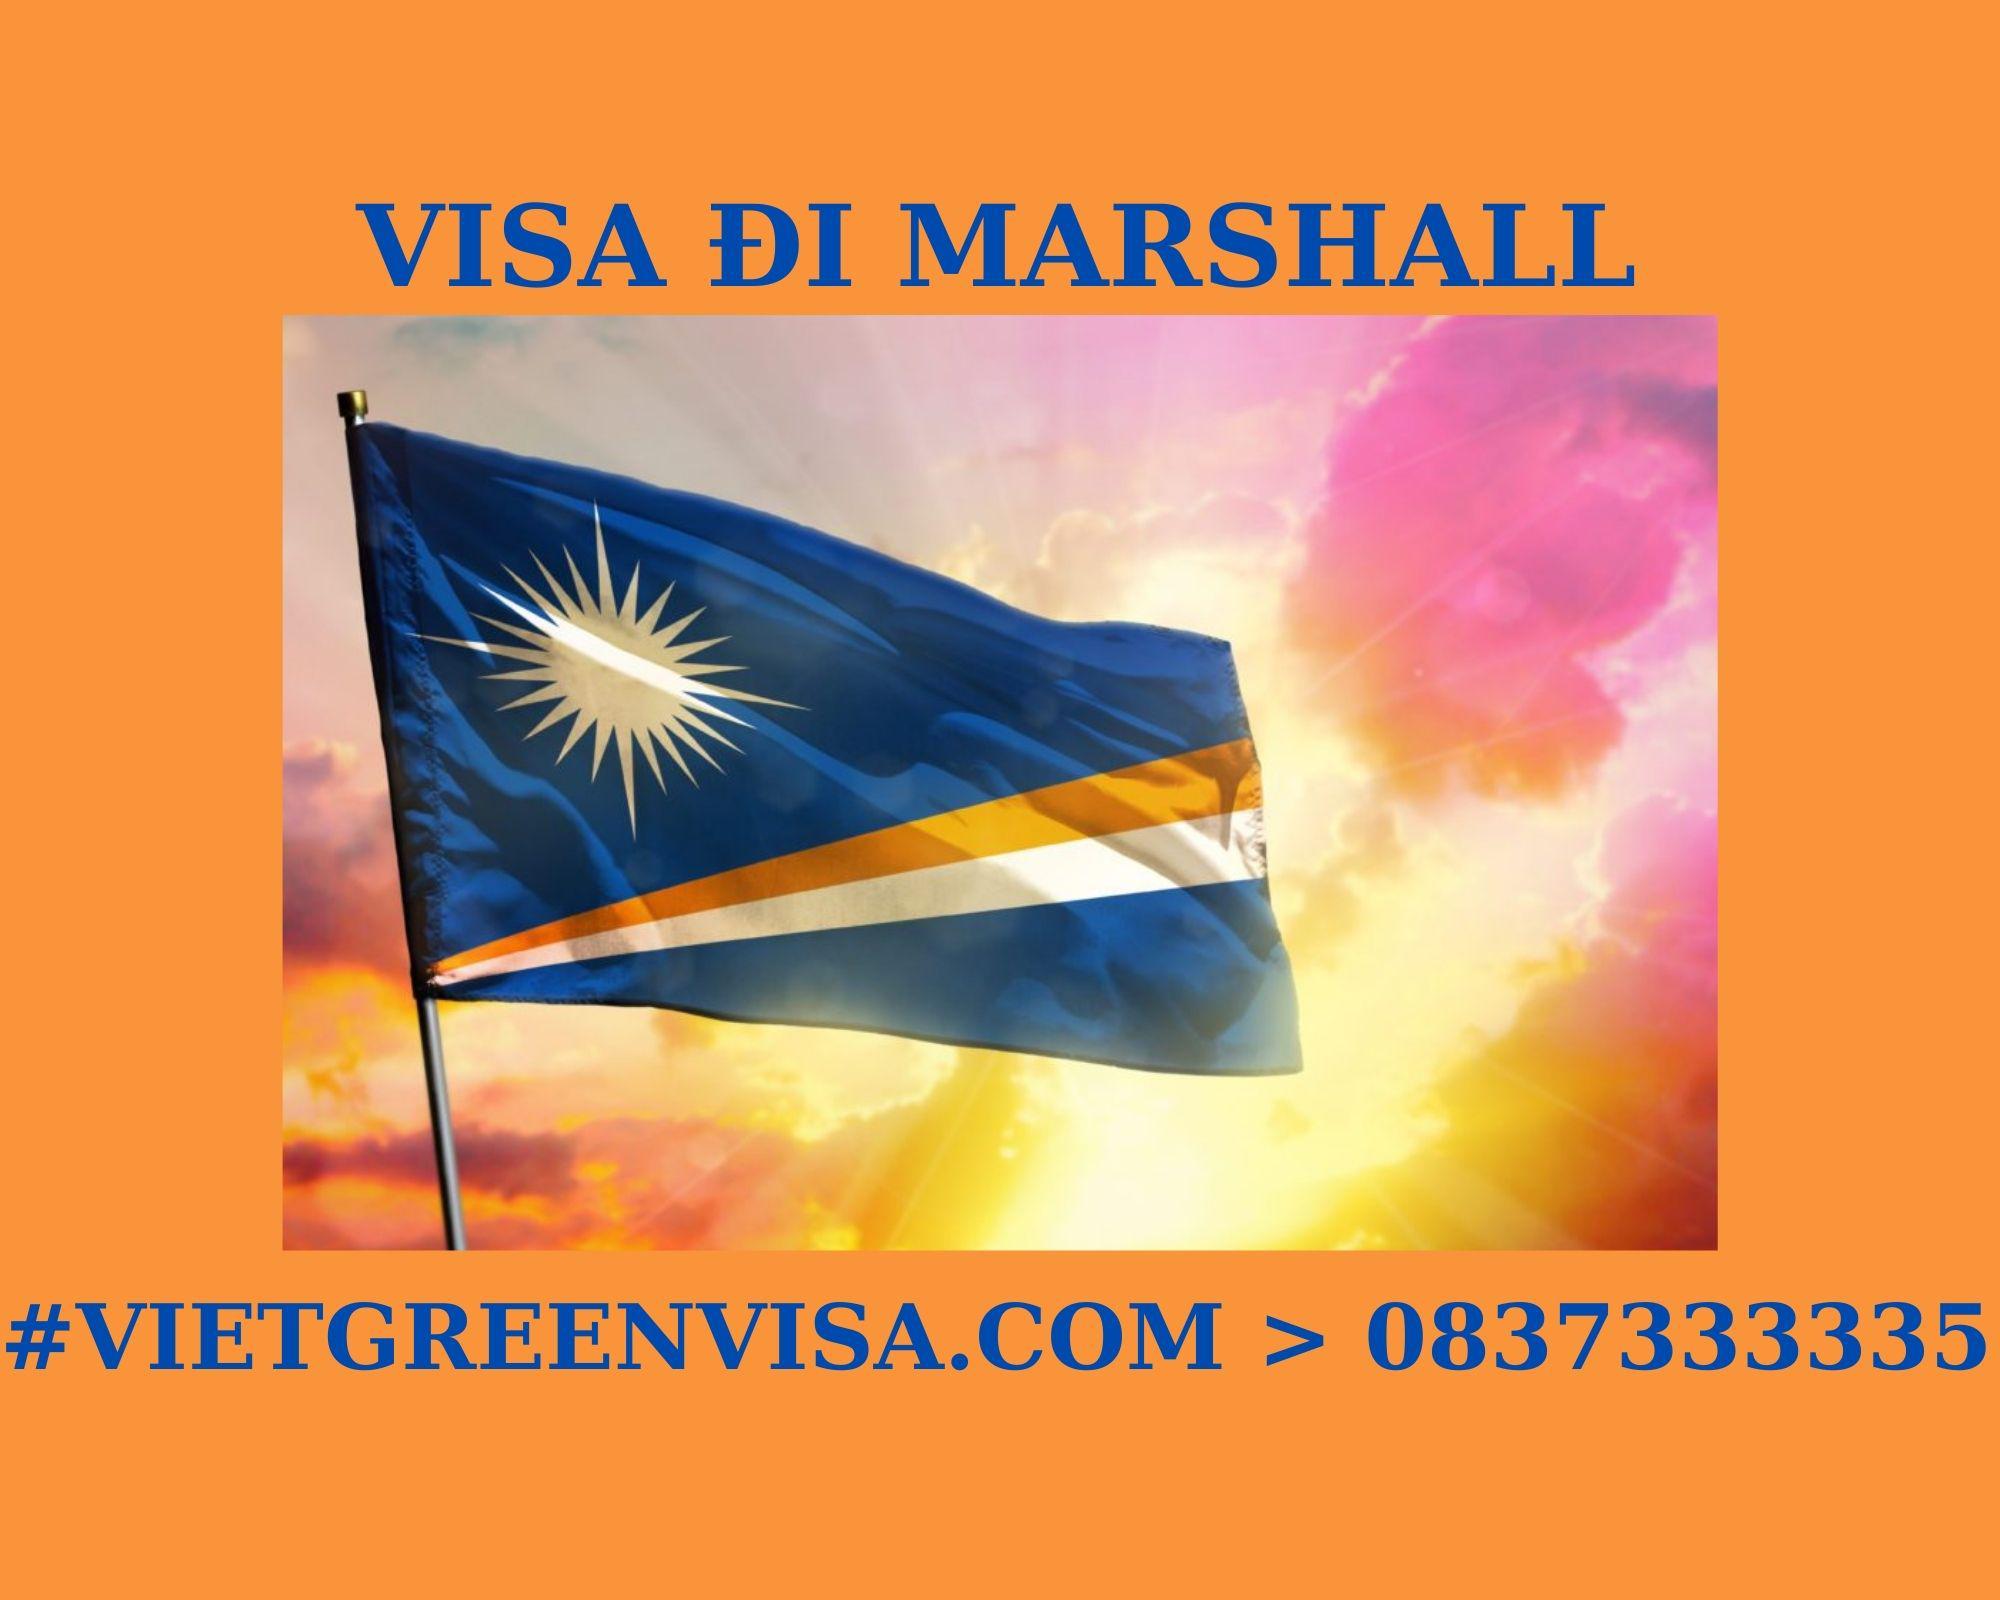 Visa thuyền viên Marshall, visa Marshall diện thuyền viên